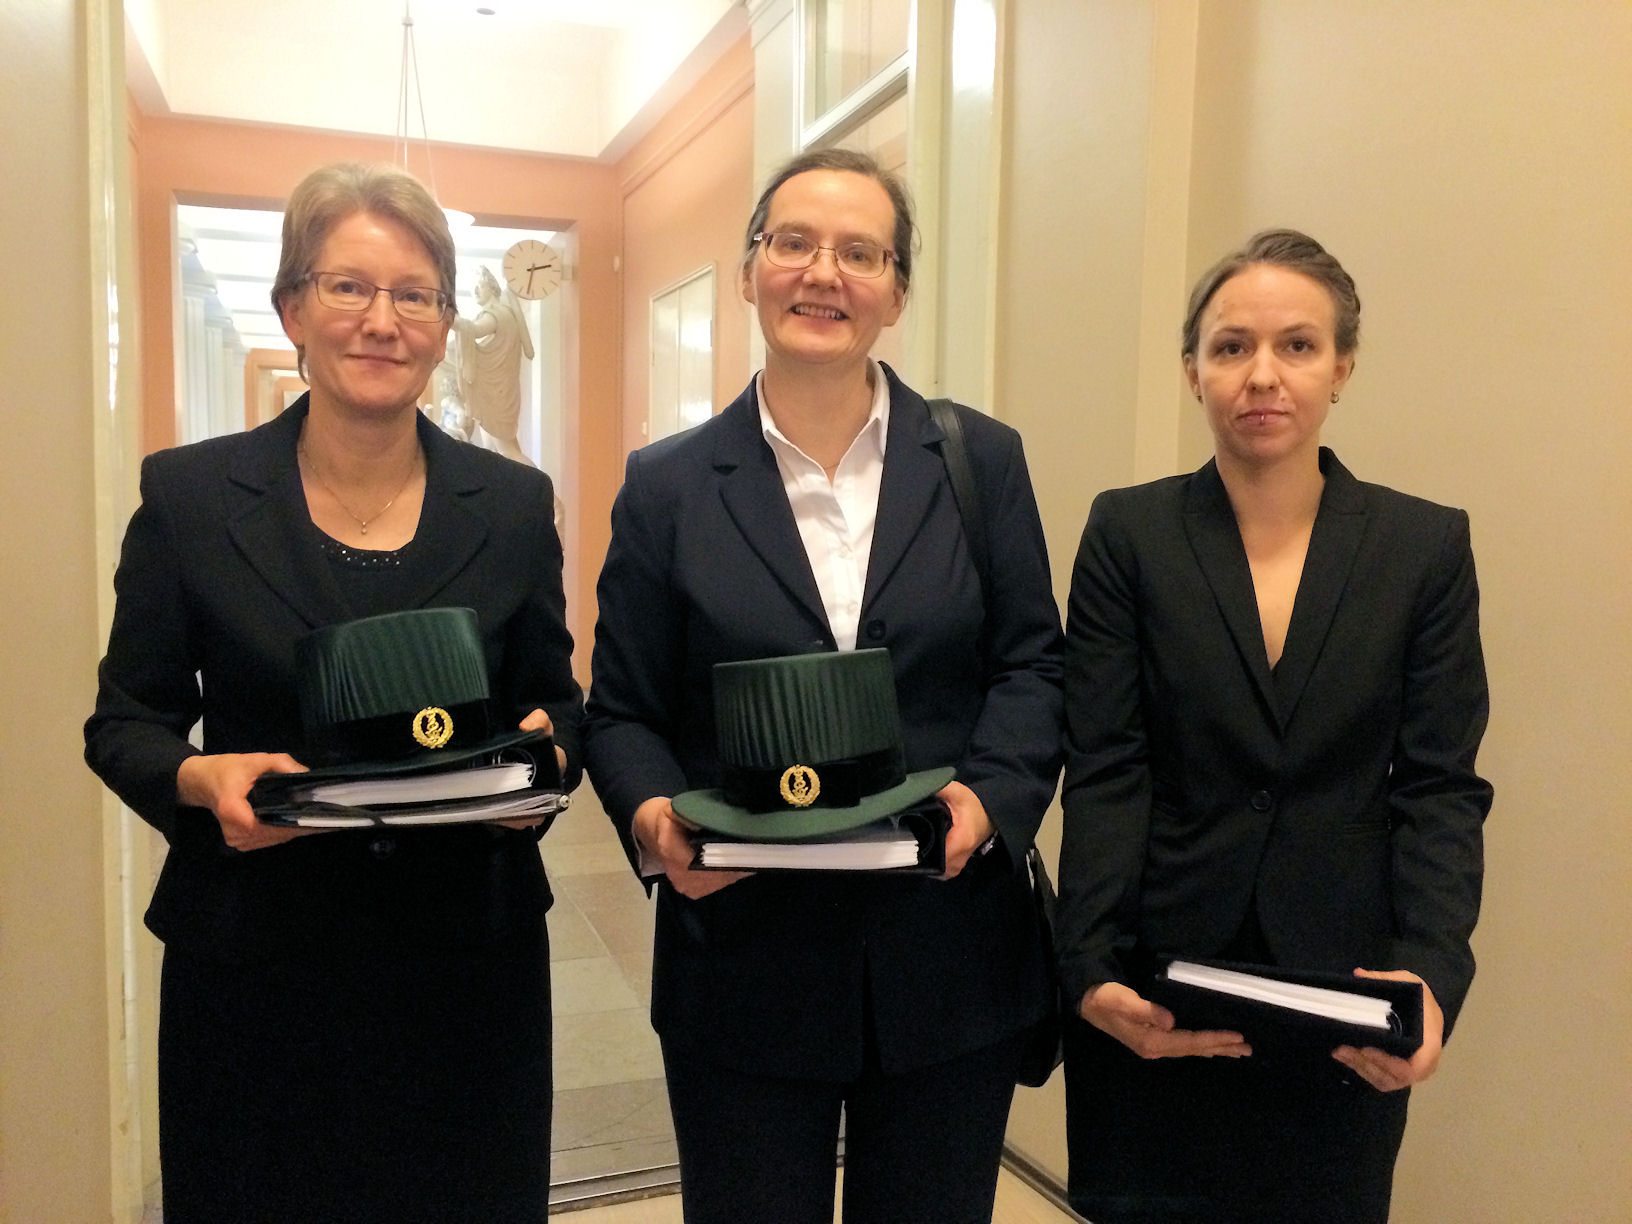 Prof. Anne Kallioniemi, Prof. Päivi Peltomäki and M.Sc Emmi Joensuu. Kuvaaja: Annette Gylling